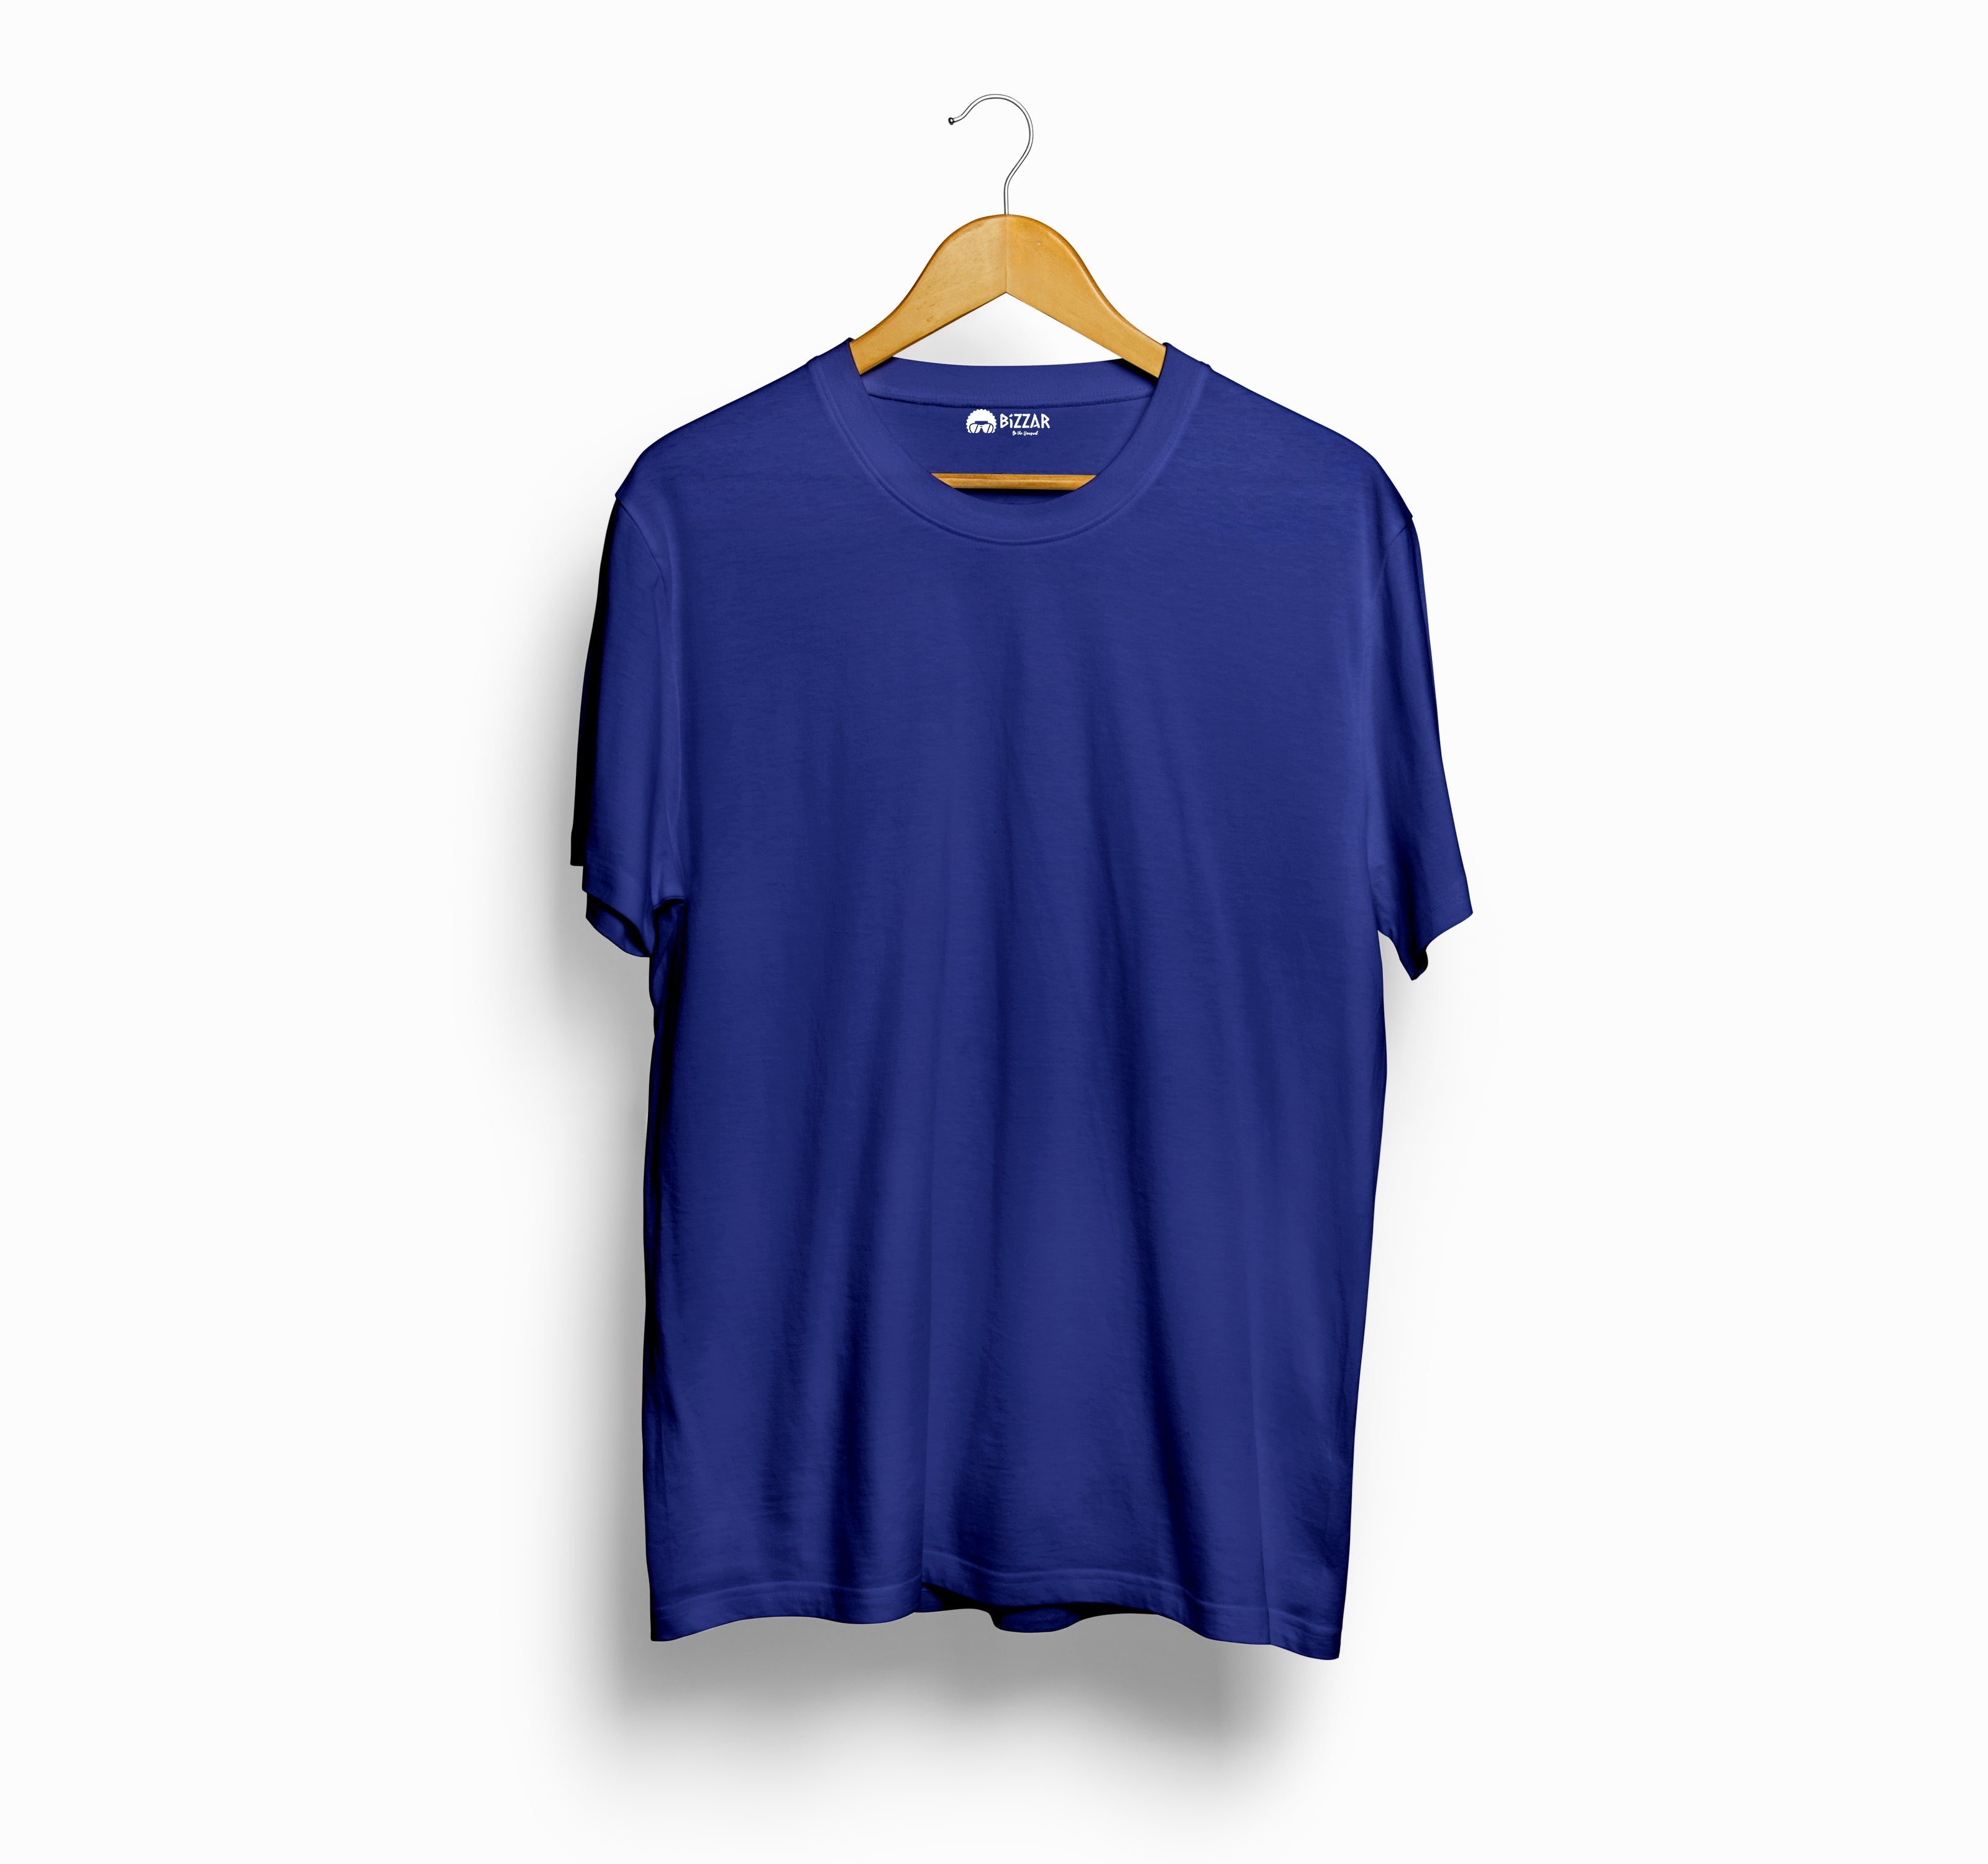 Bizzar's Royal Blue T-Shirt